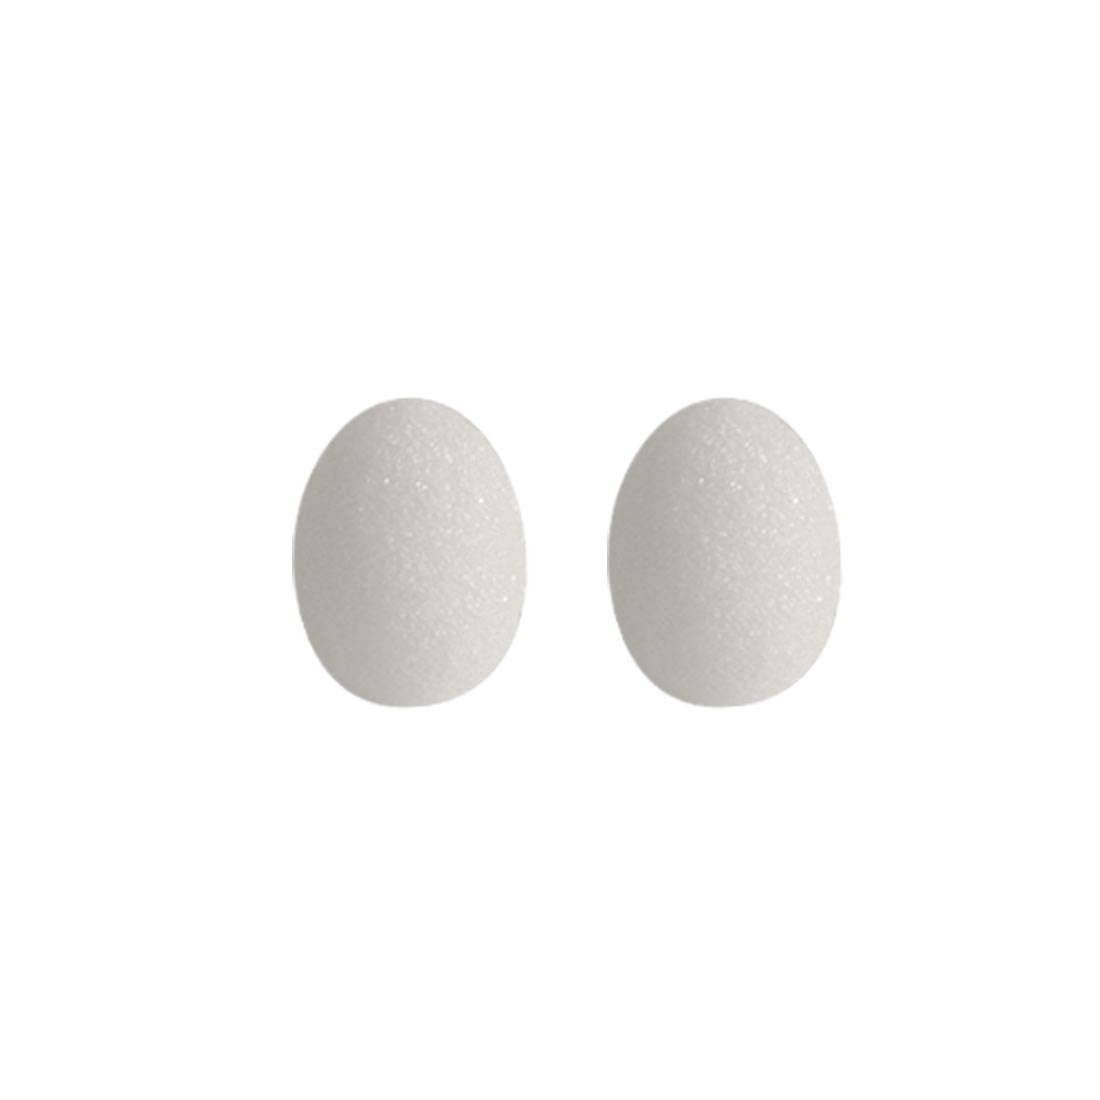 Two White Styrofoam Eggs